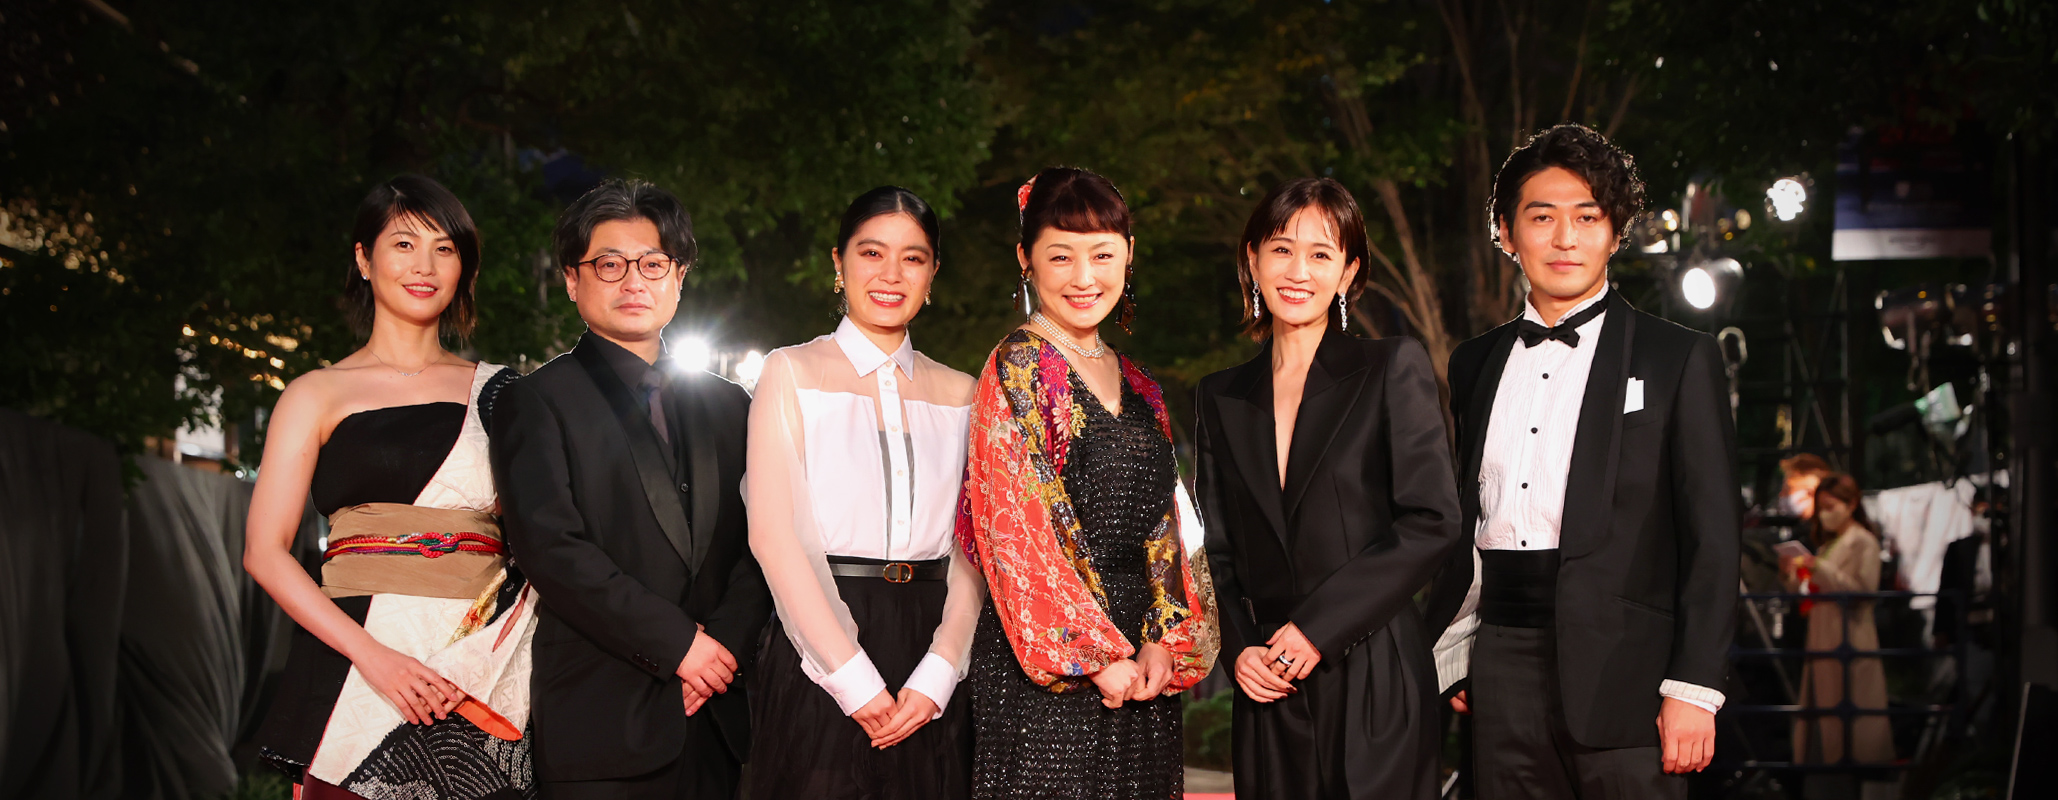 Redcarpet The Lump in My Heart: MATSUMURA	SHINGO, YOSHIDA MIZUKI, TOKIWA TAKAKO, MAEDA ATSUKO, ISHIHARA RII, EMI RYUSEI